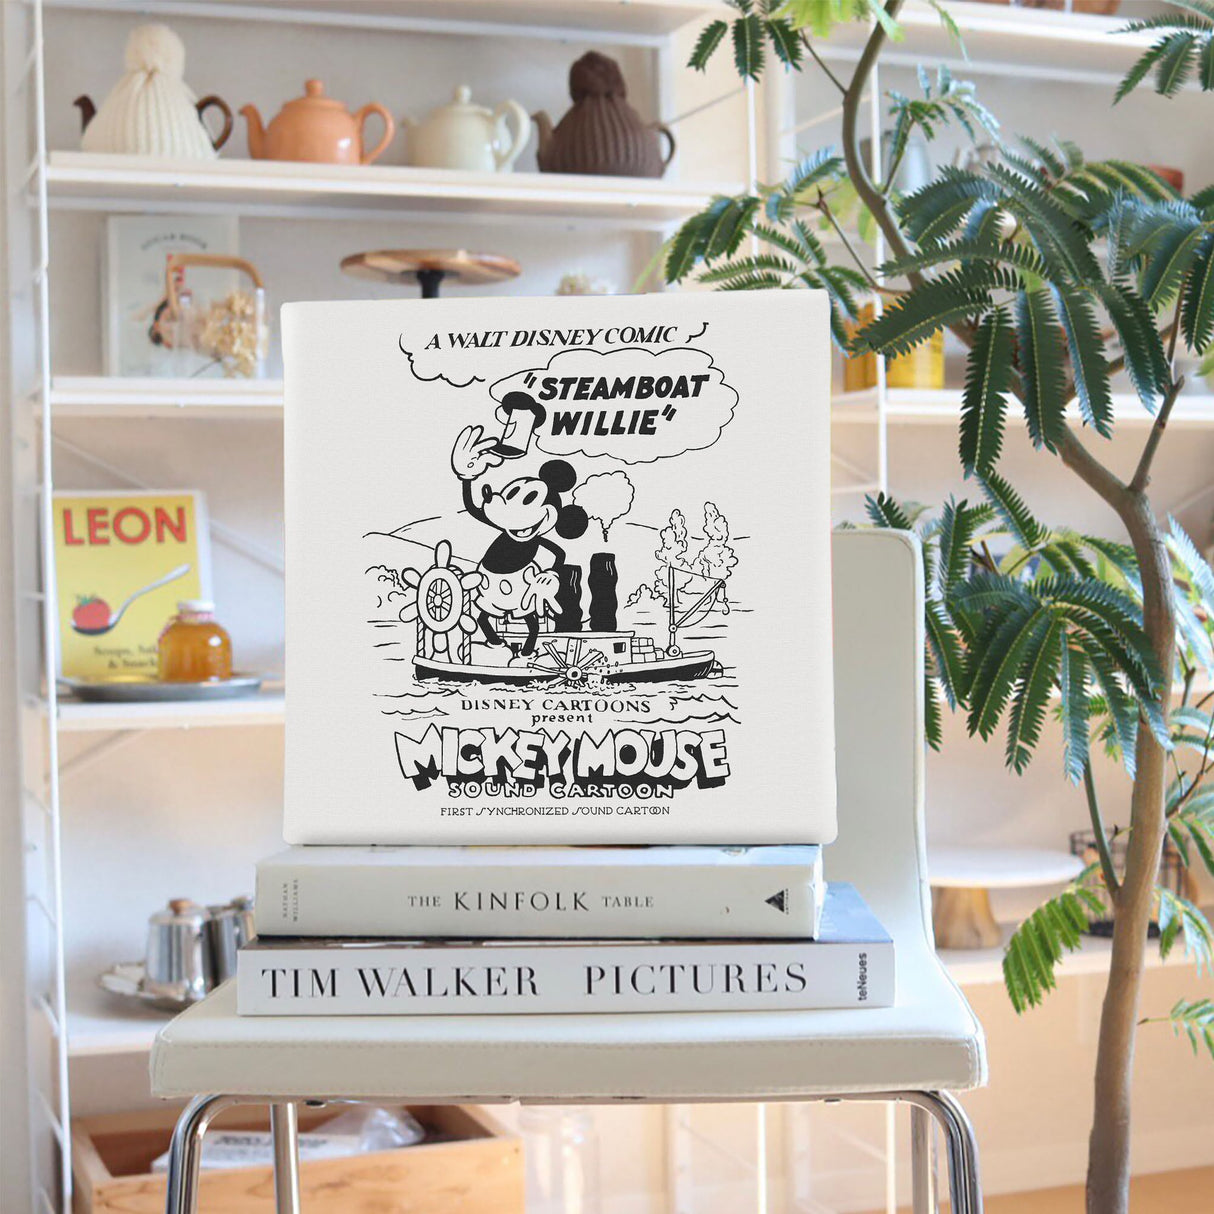 ミッキーマウスのファブリックボード インテリア雑貨 アートパネル キャンバス ディズニー 蒸気船ウィリー dsny-2303-06